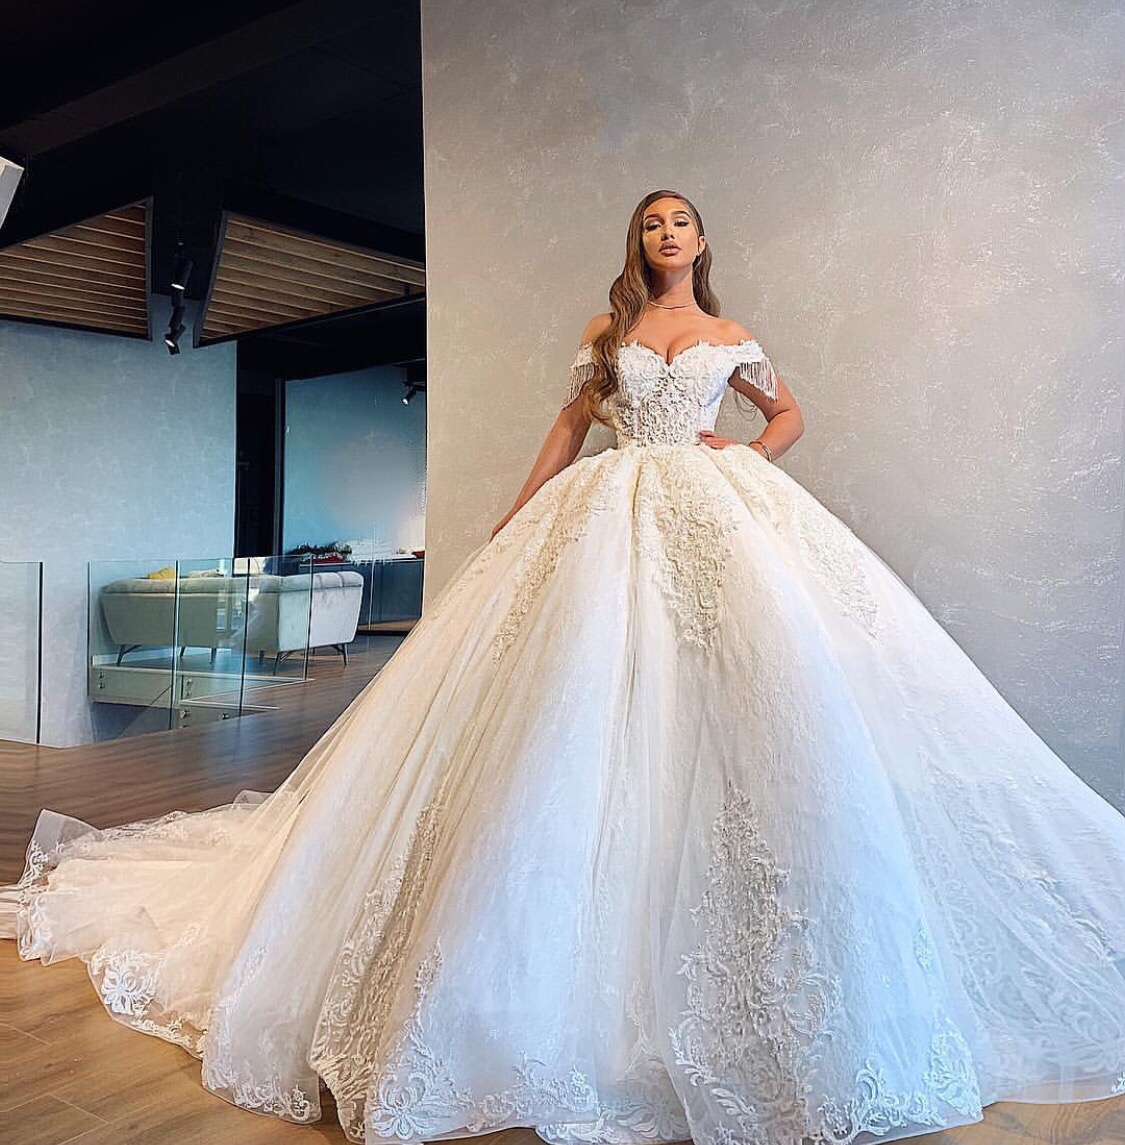 فرفلة لفساتين الزفاف Farfalla Wedding Dresses